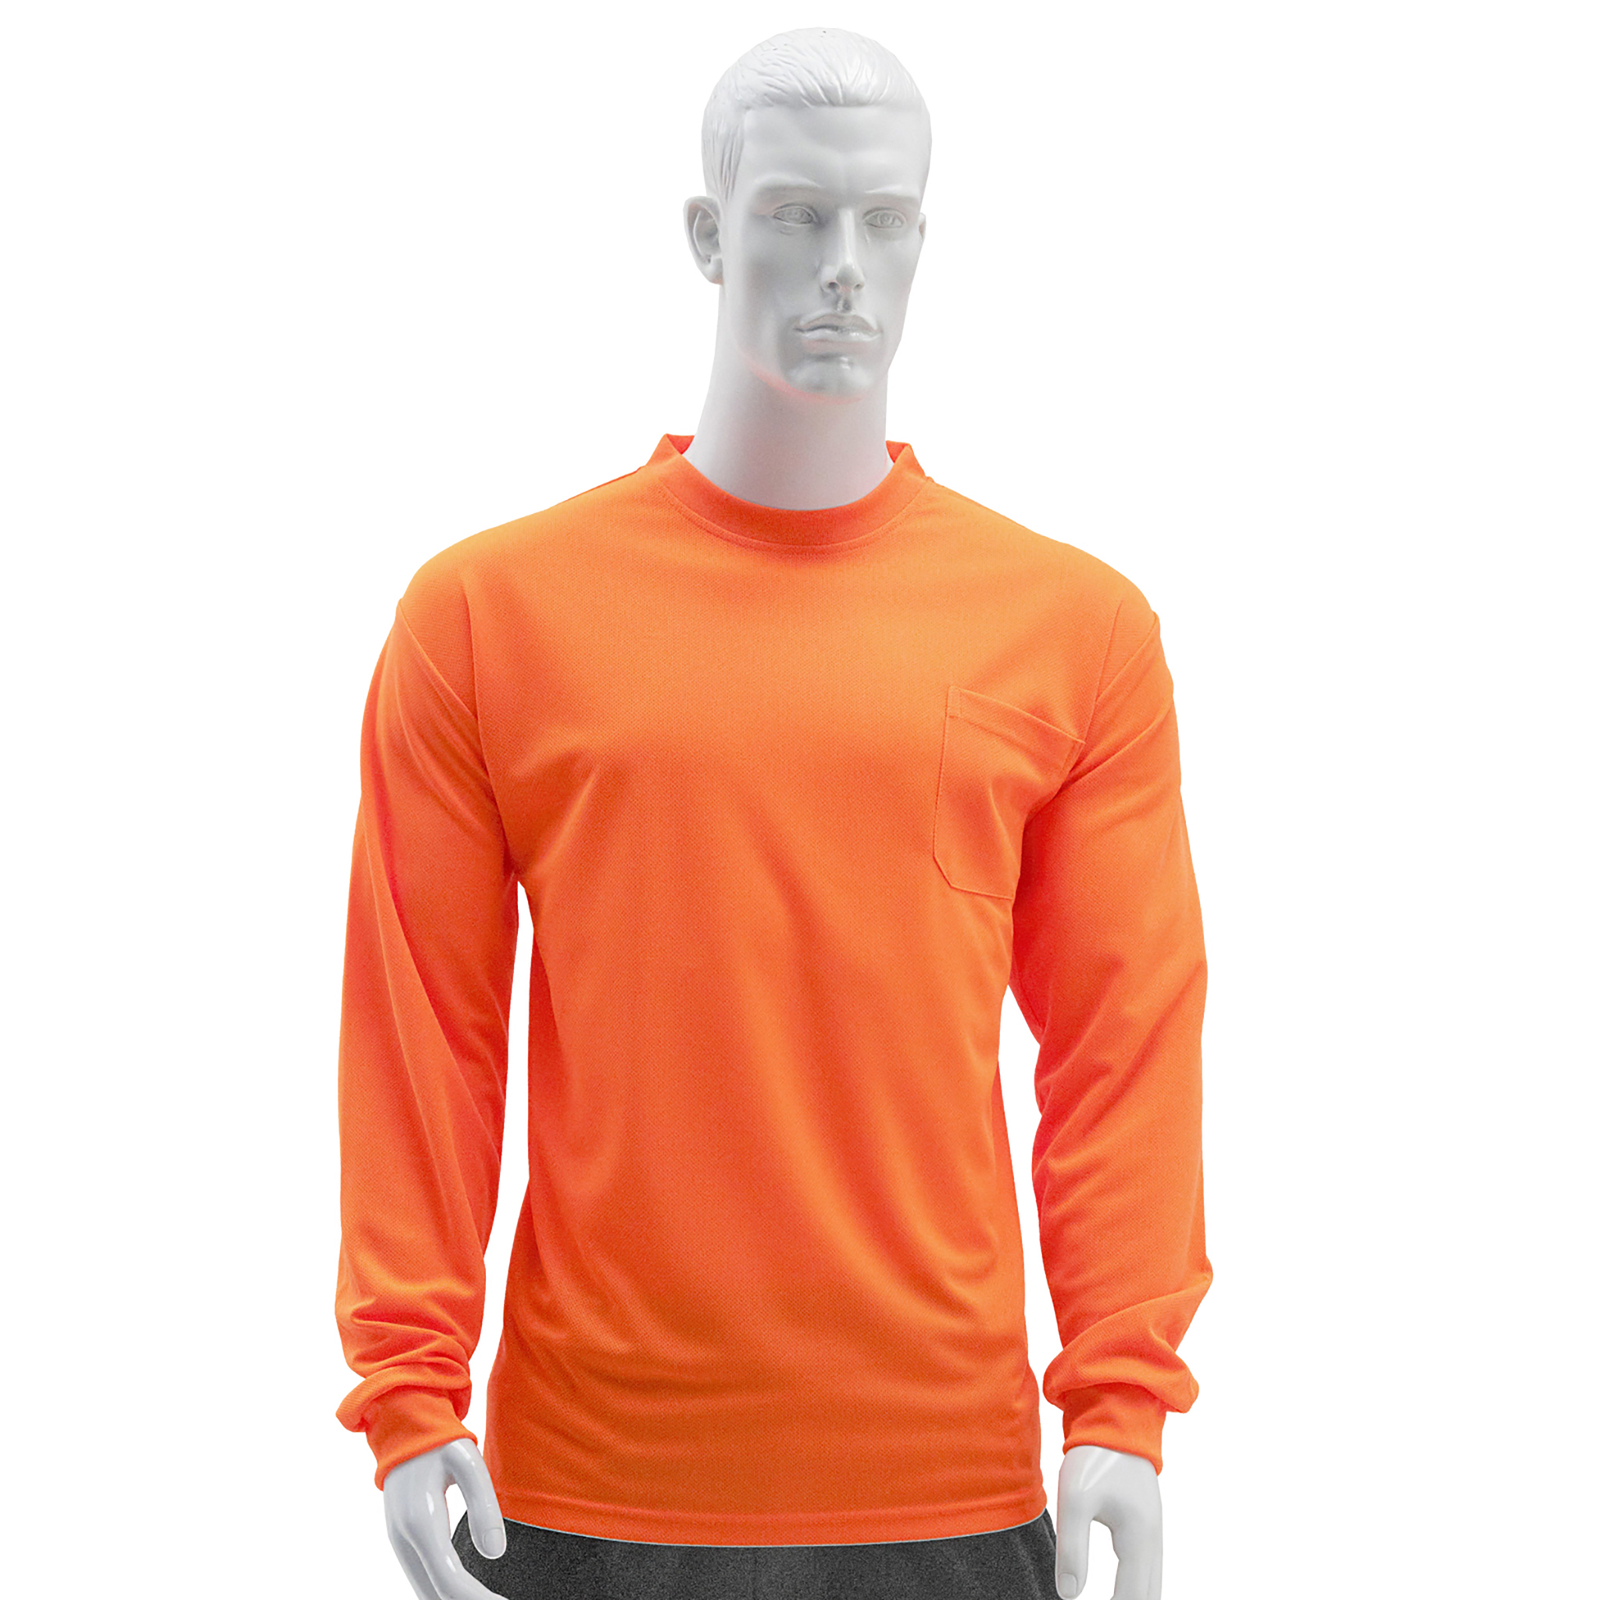 A modern mannequin wearing an orange hi vis long sleeve shirt